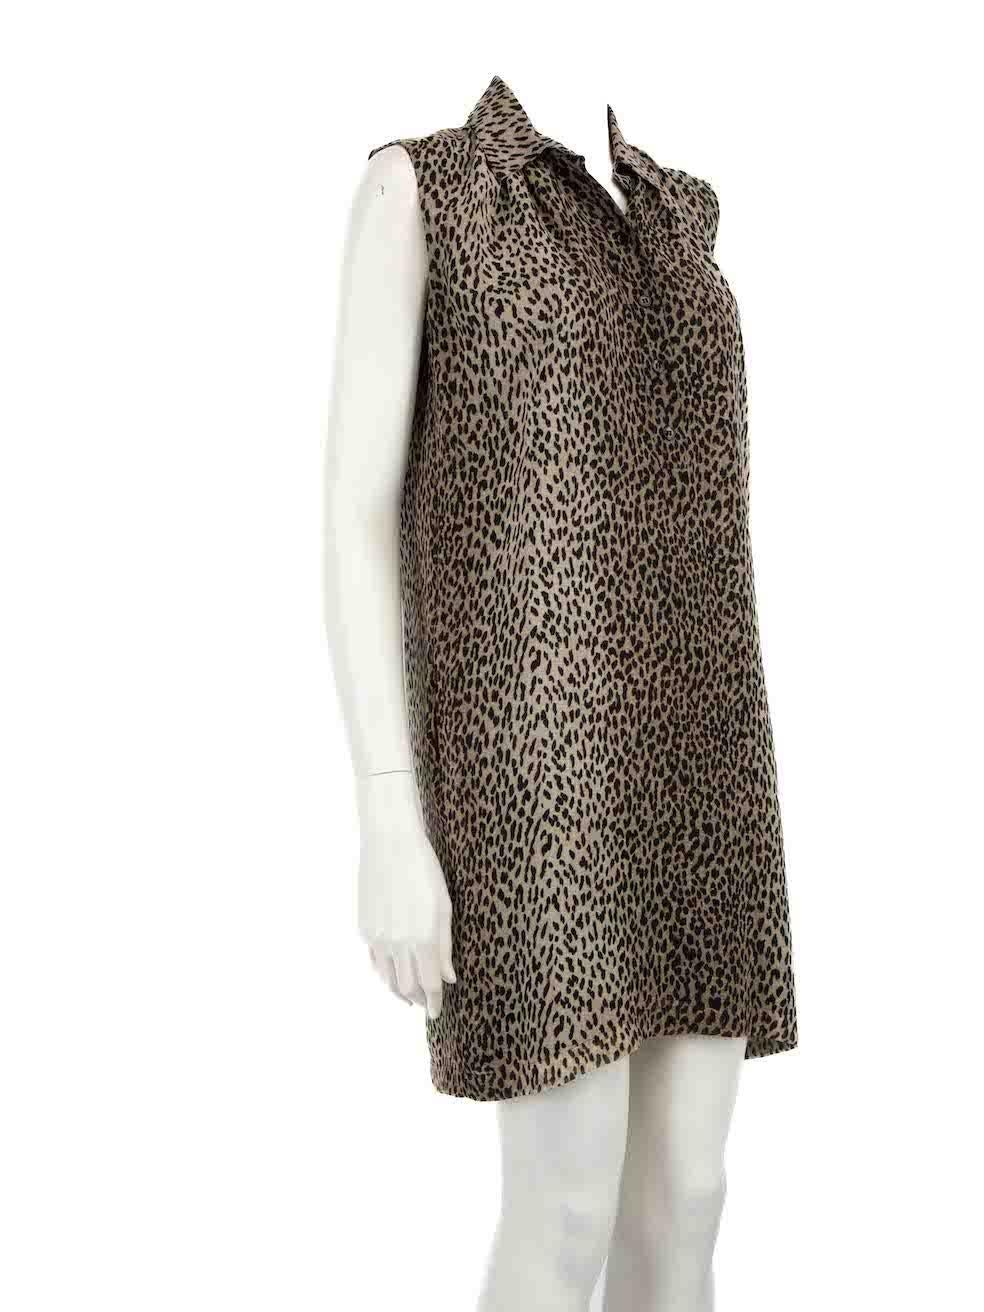 CONDIT ist sehr gut. Kaum sichtbare Abnutzungserscheinungen am Kleid sind bei diesem gebrauchten Saint Laurent Designer-Wiederverkaufsartikel zu erkennen.
 
 Einzelheiten
 Braun
 Seide
 Kleid
 Leopardenmuster
 Ärmellos
 Knielang
 Knopfverschluss
 
